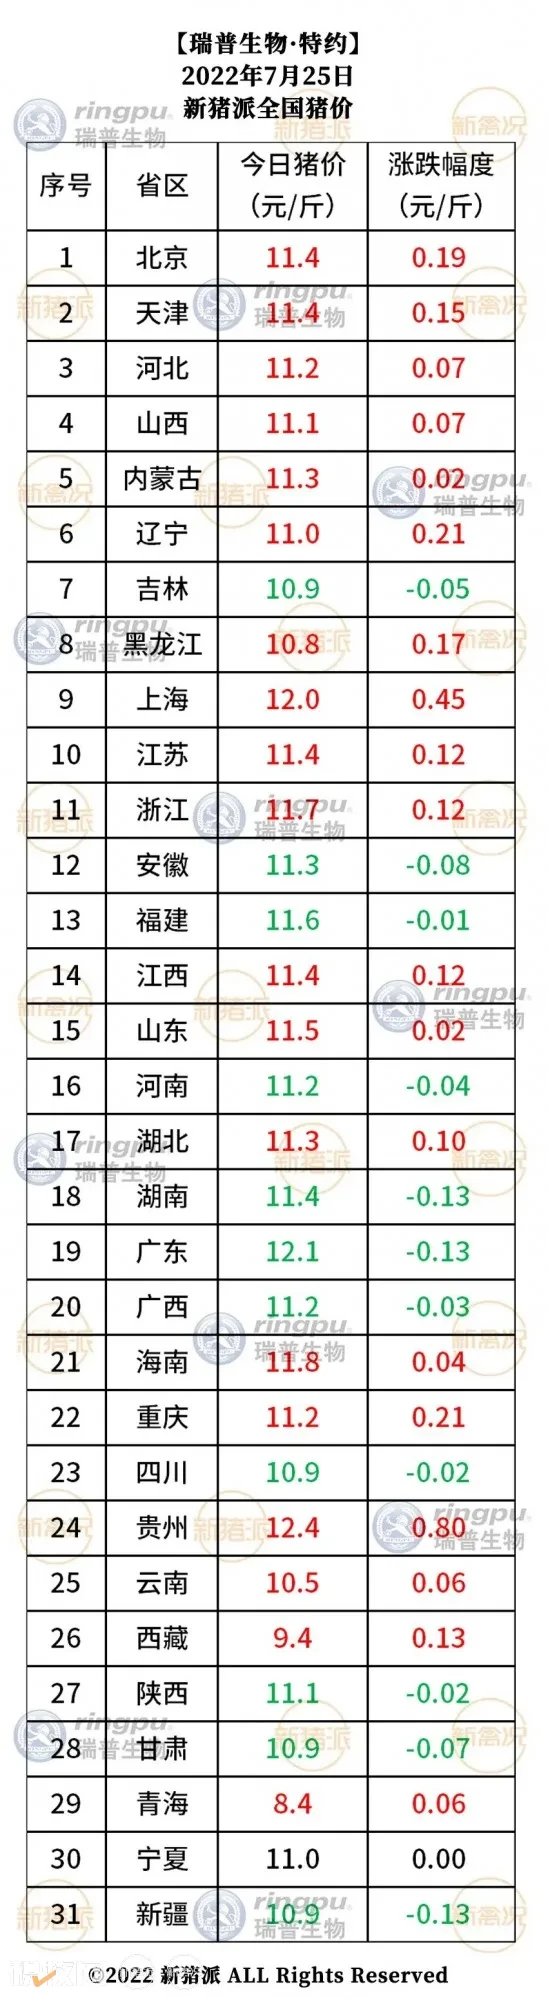 7月25日：多地走势向好，贵州再涨0.8元/斤【瑞普生物·猪价指数】